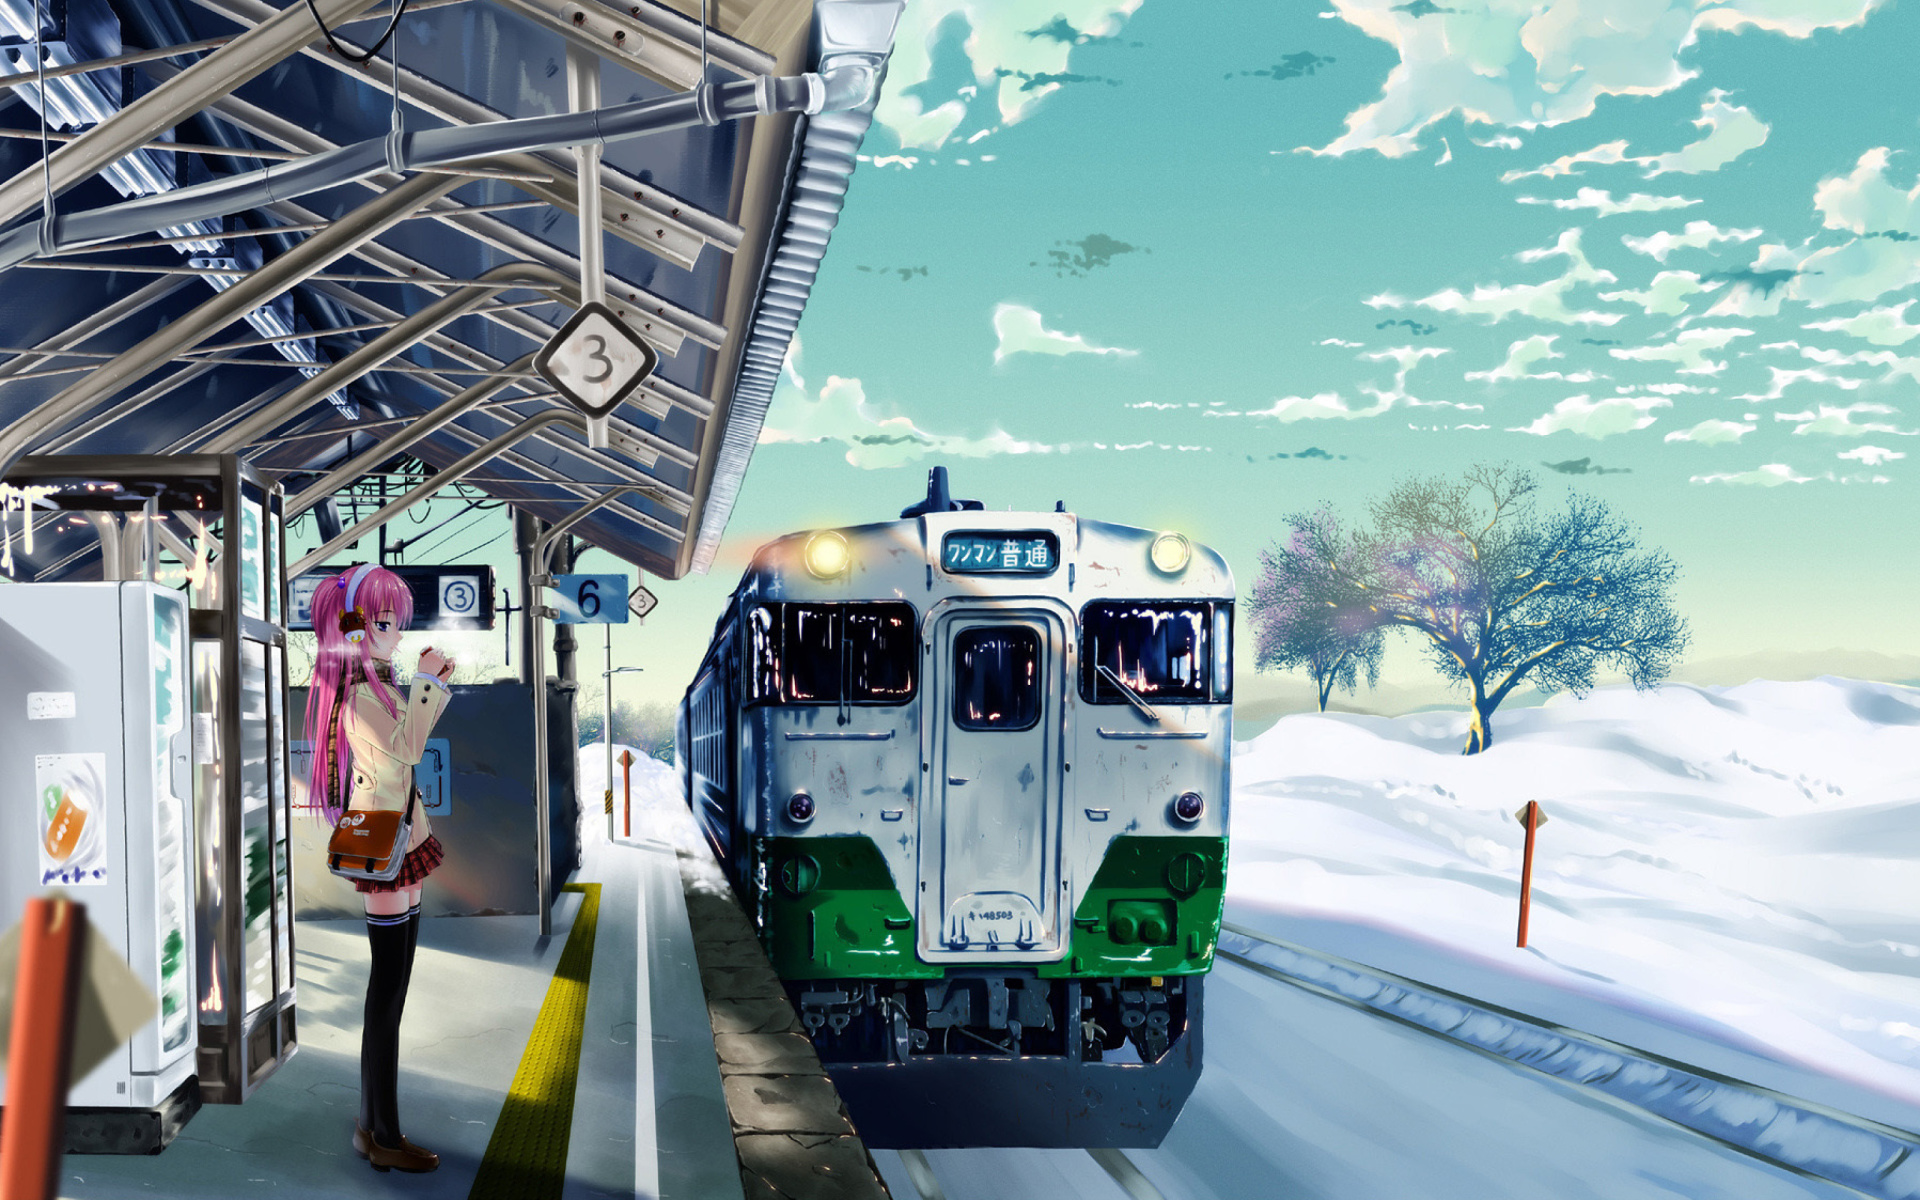 Обои Anime Girl on Snow Train Stations 1920x1200